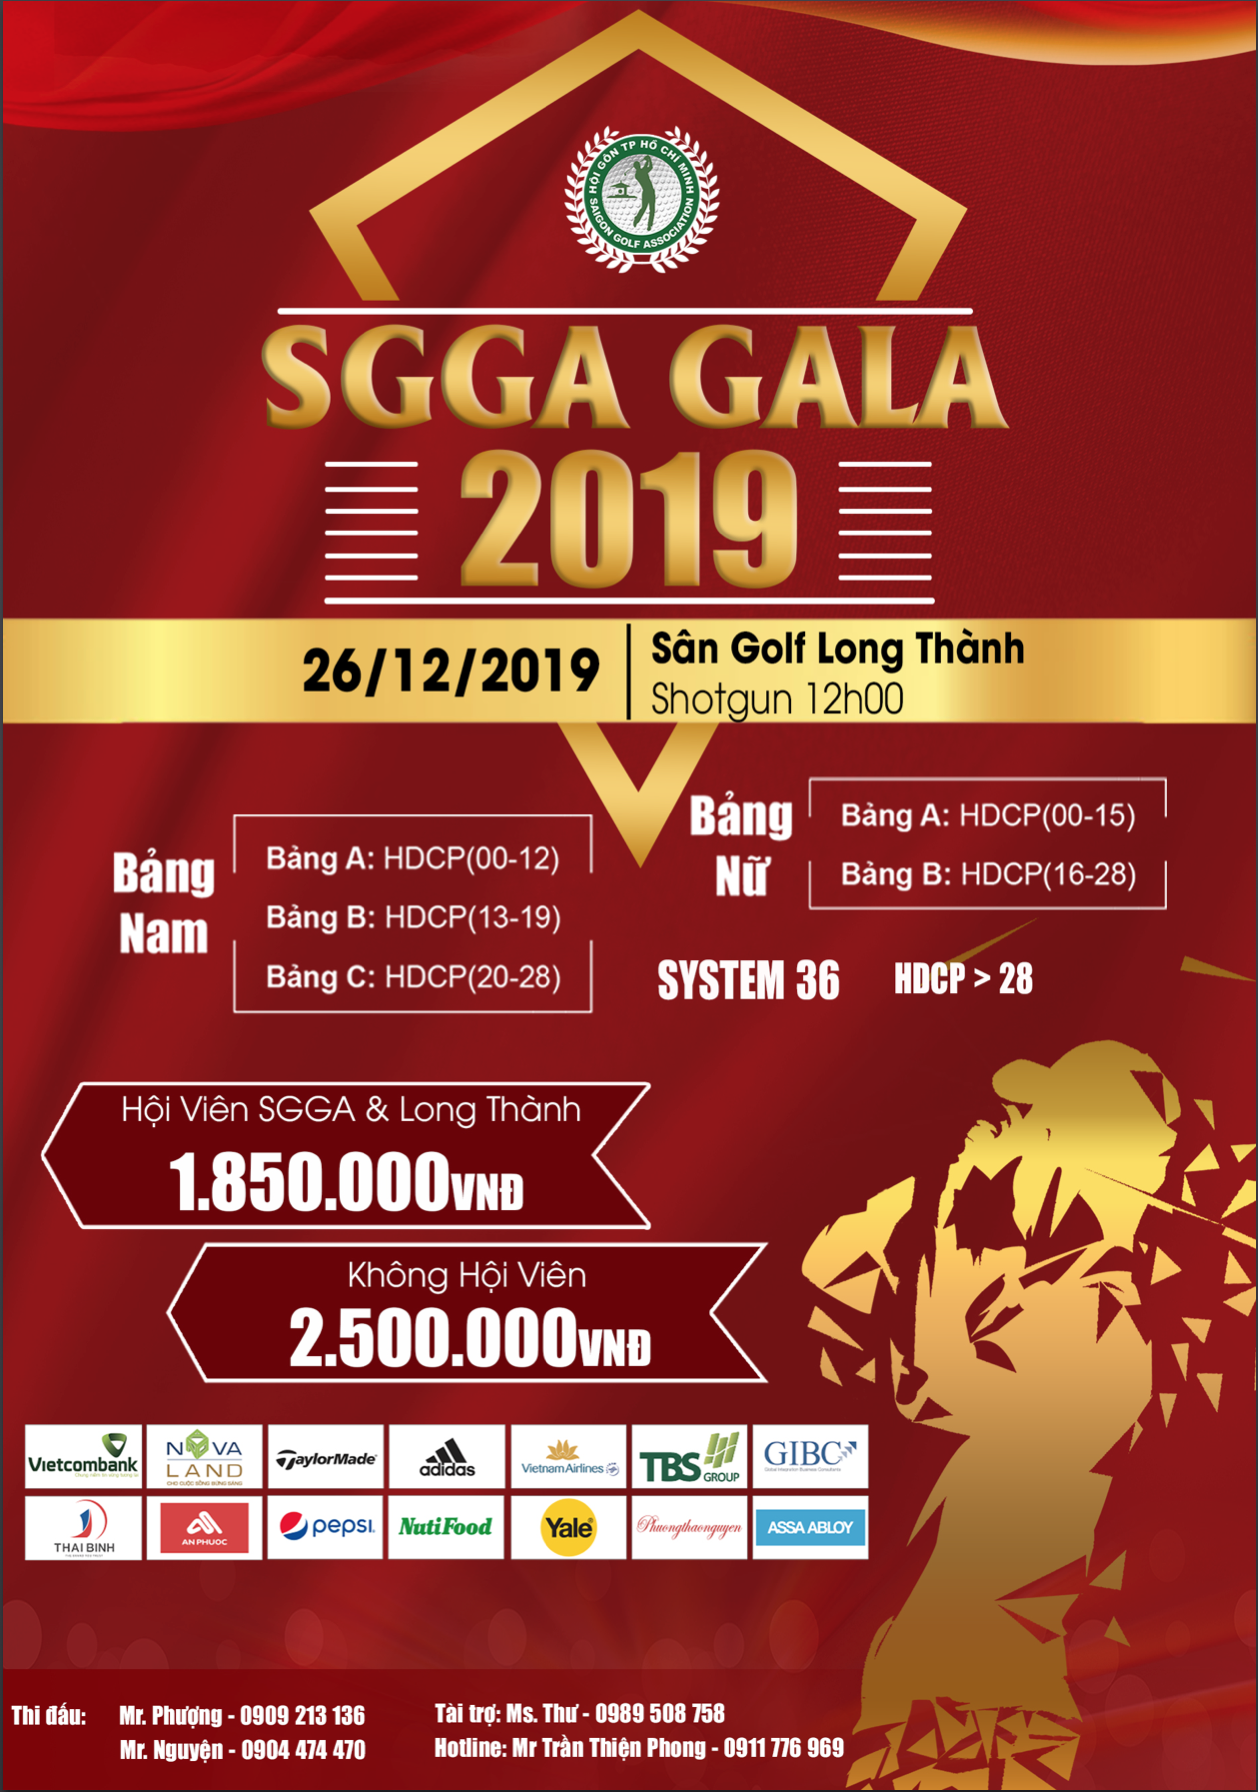 SGGA Gala 2019 chuẩn bị khởi tranh